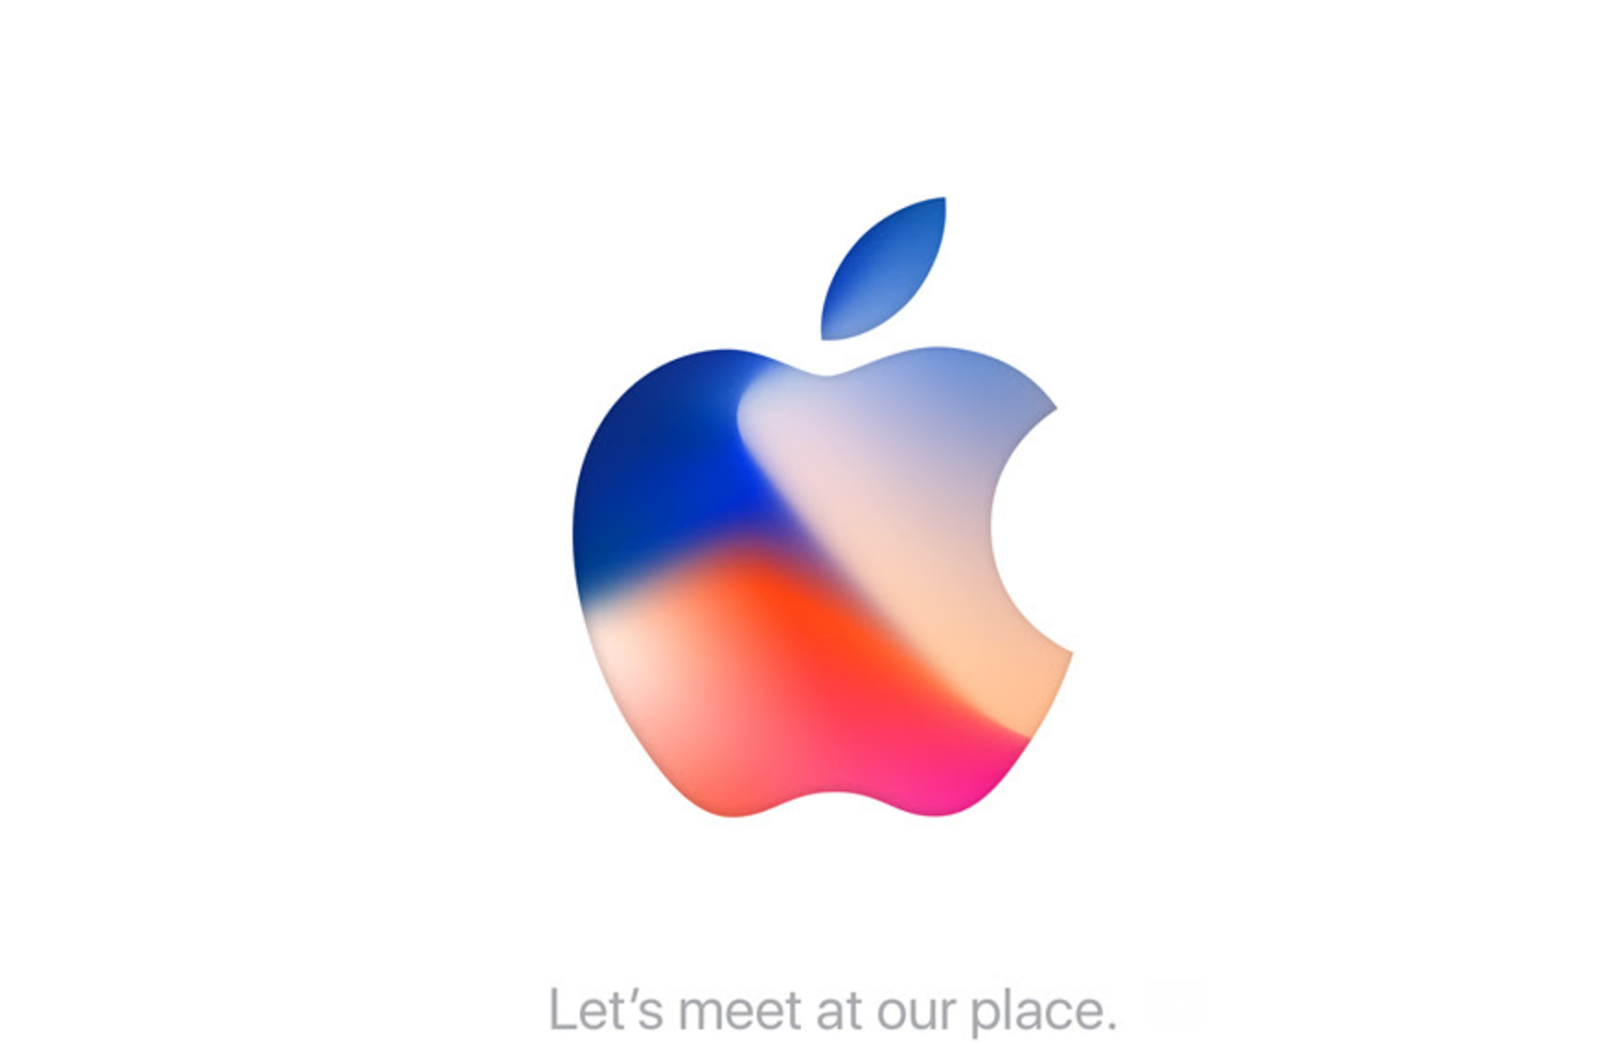 Oficial: Apple presentará el iPhone 8 para el 12 de septiembre